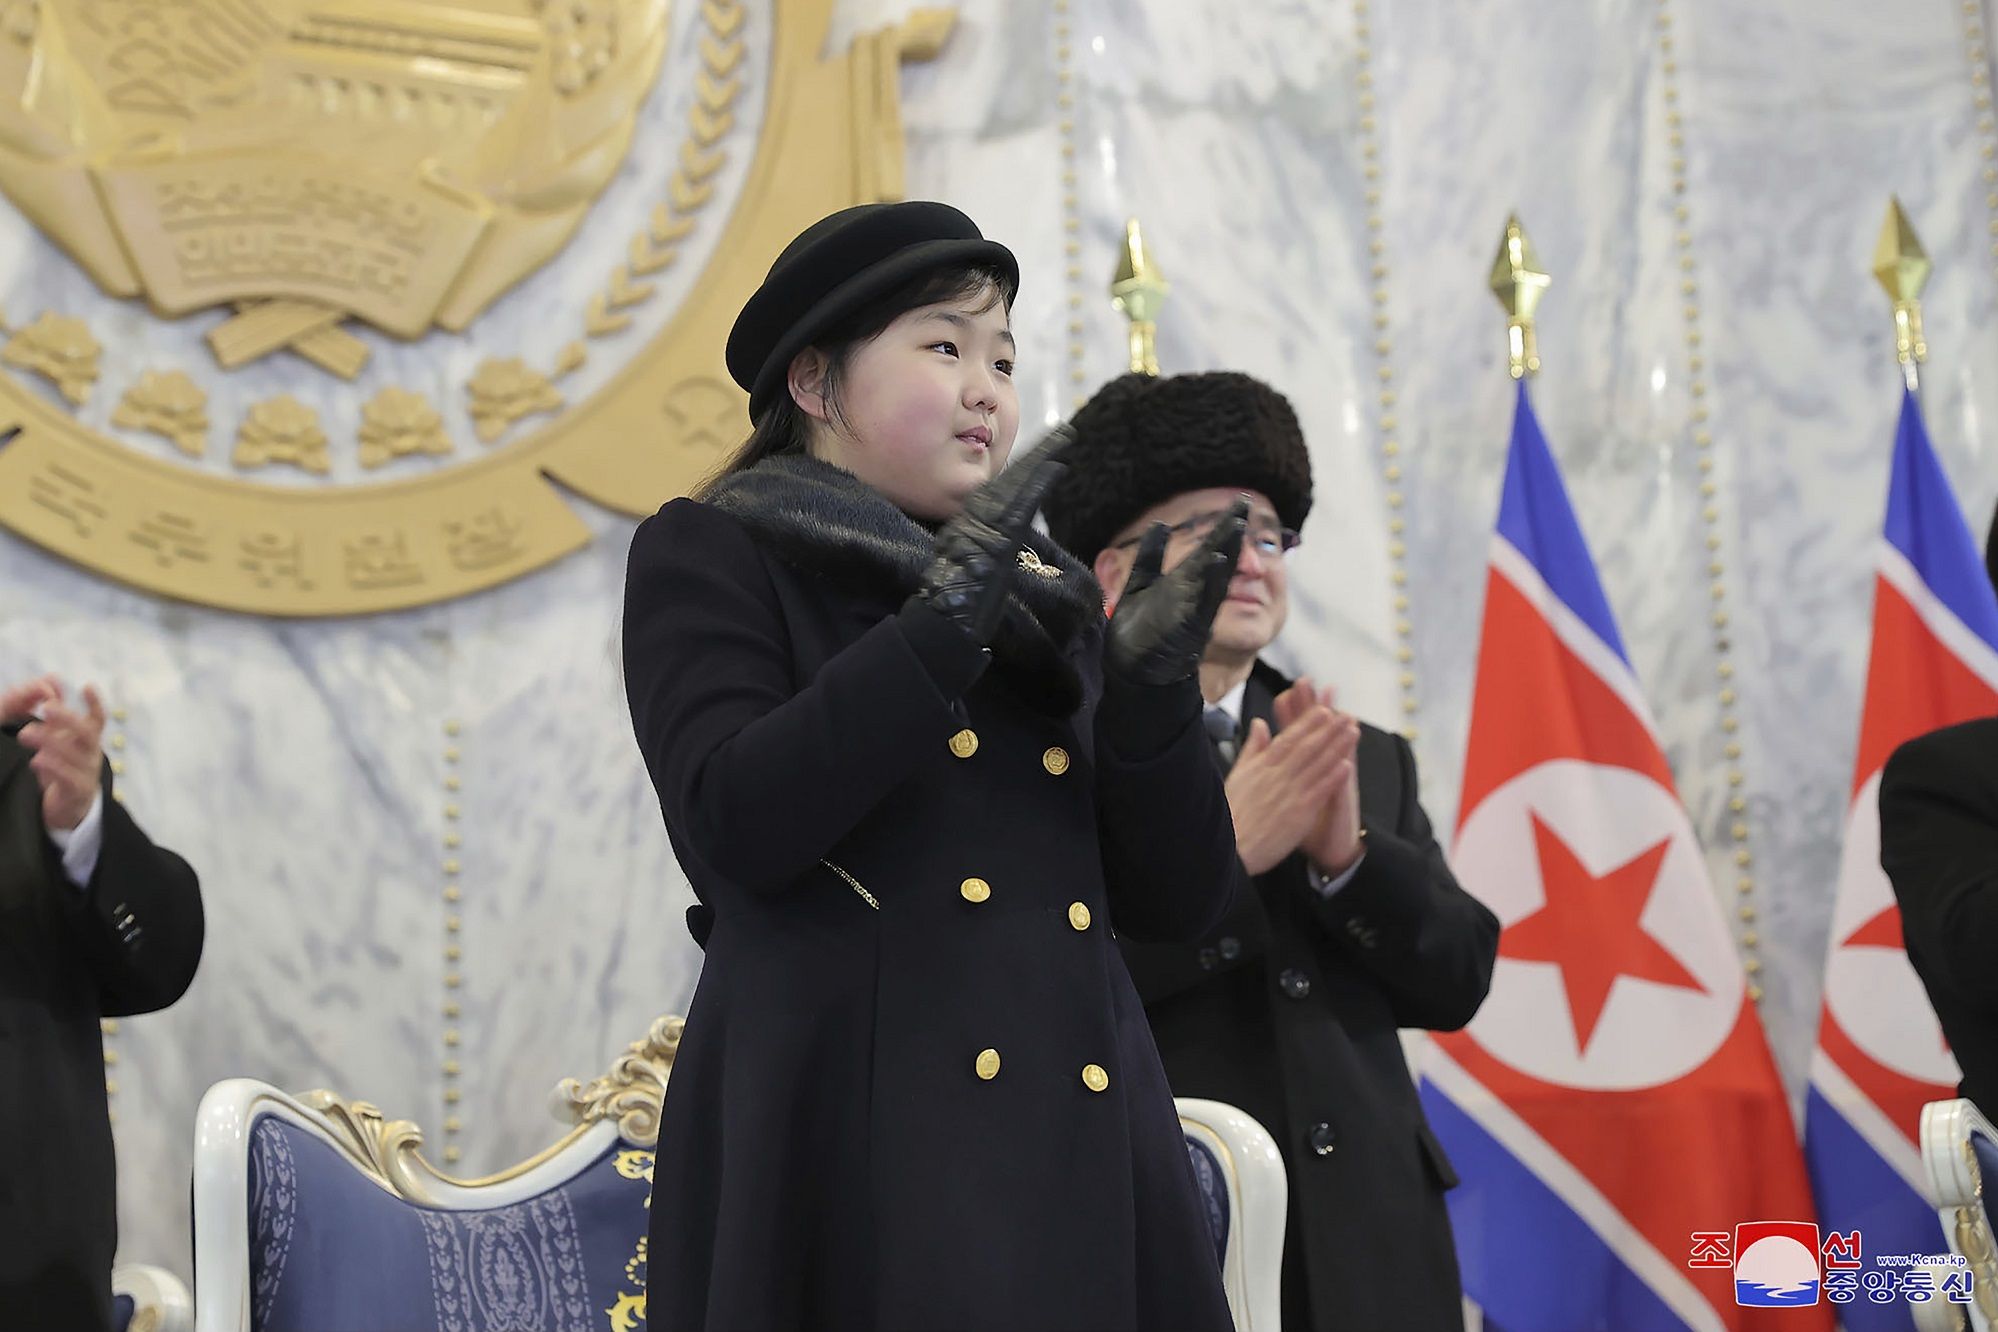 Sering Tampil, Kim Ju Ae Disiapkan Jadi Penerus Dinasti Korea Utara?